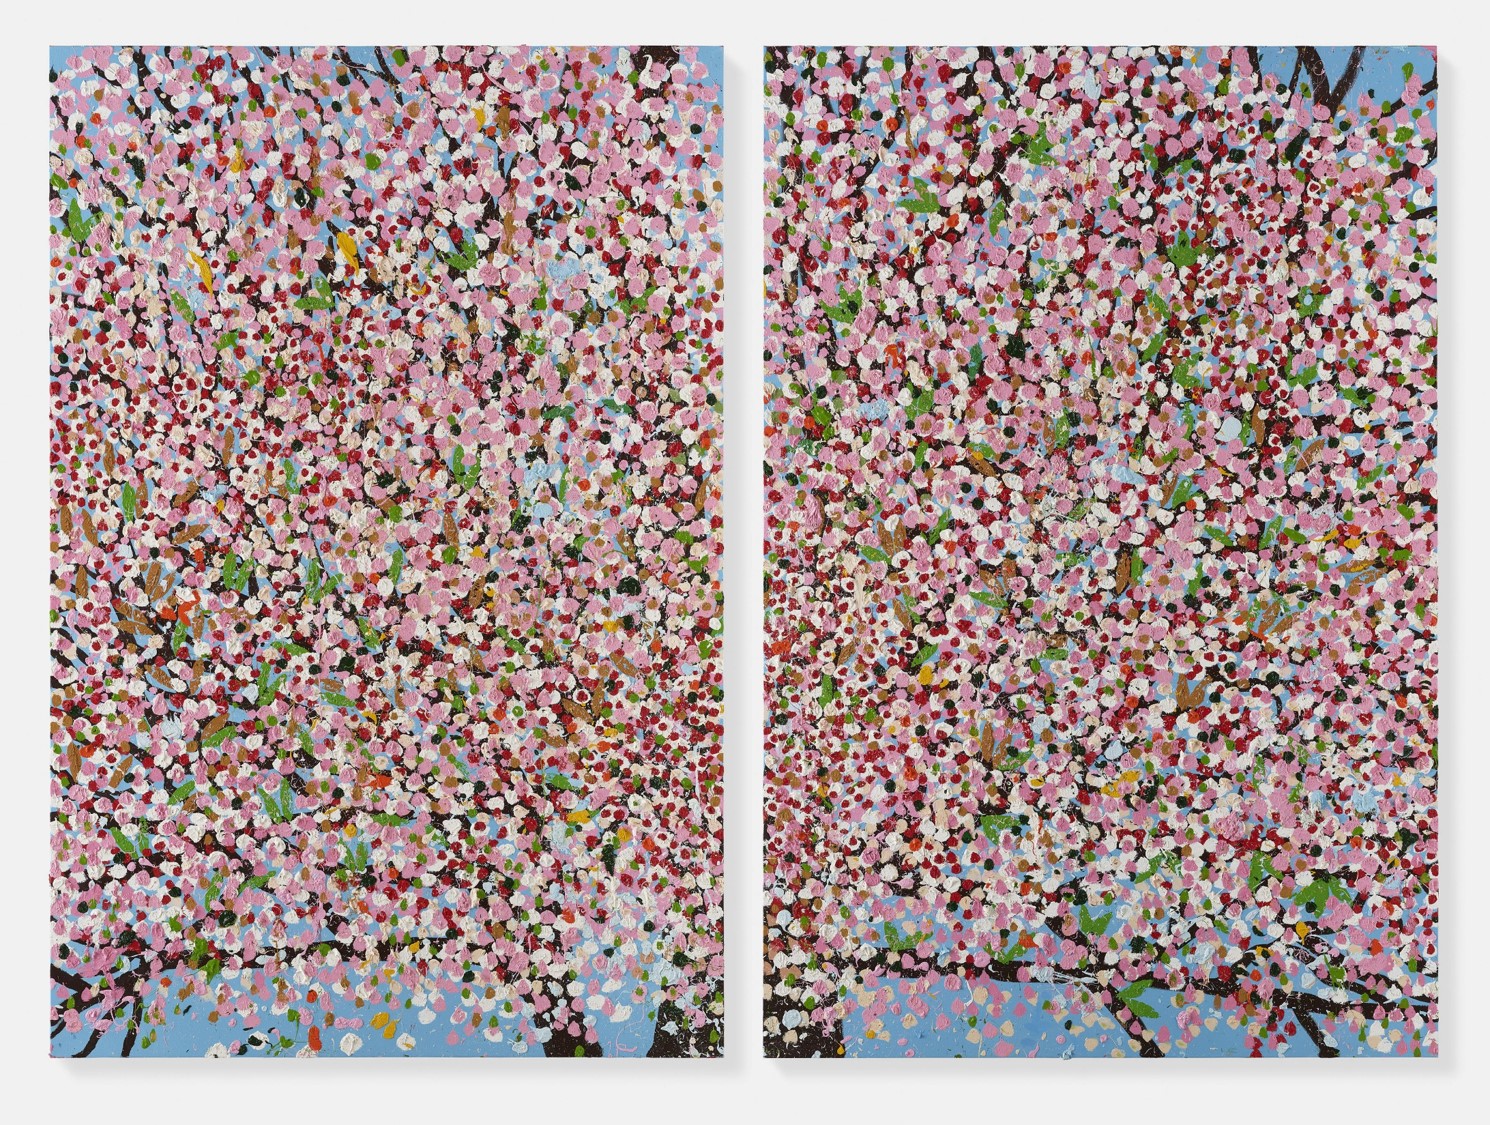 カルティエ現代美術財団、ダミアン・ハースト『Cherry Blossoms』の 